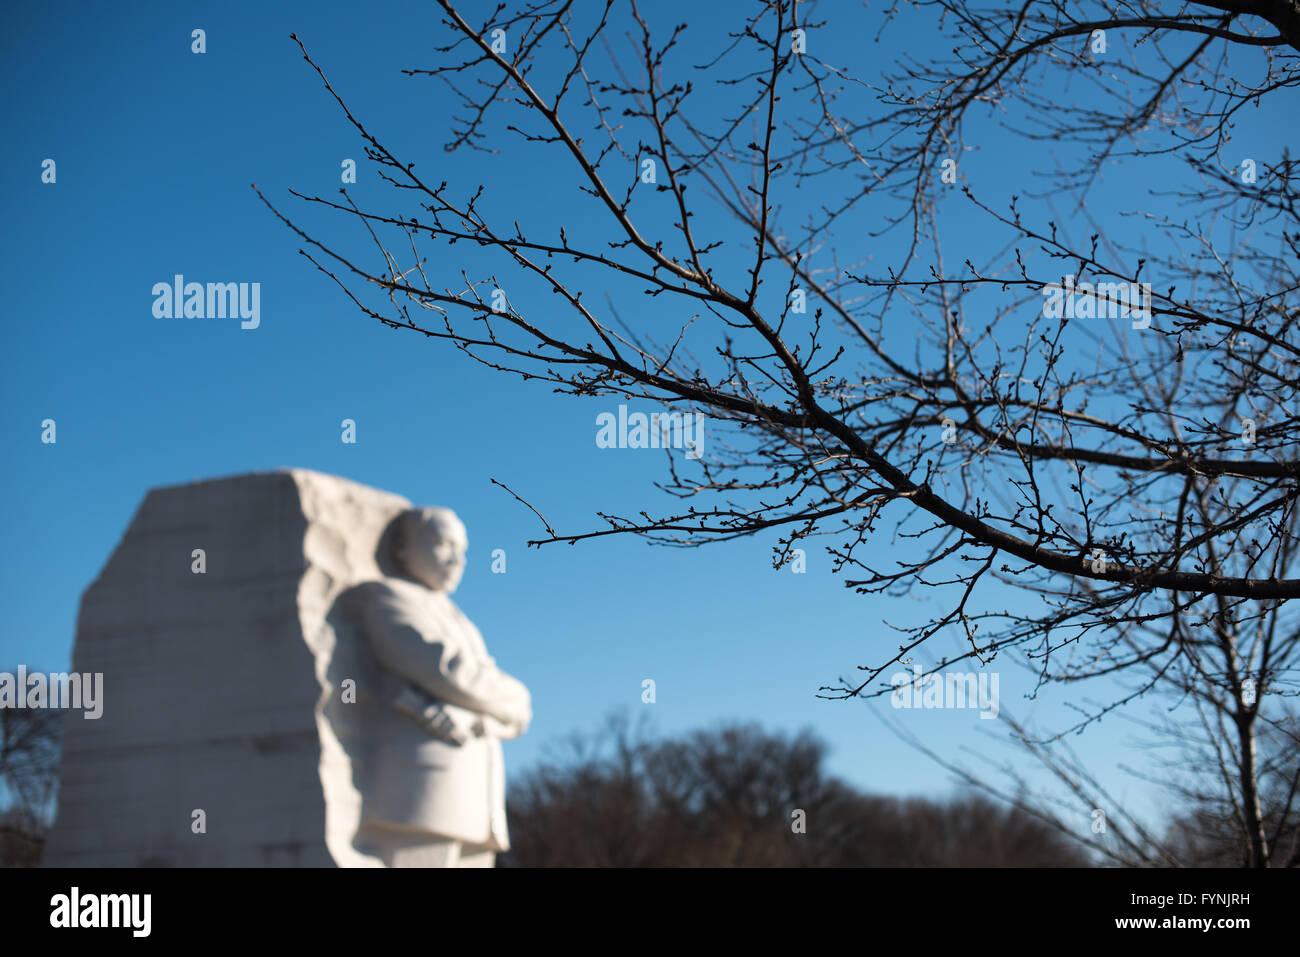 WASHINGTON DC, USA - das im Jahr 2011 eröffnete der Martin Luther King, Jr. Memorial das Civil Rights Leader und die Bürgerrechtsbewegung erinnert. Es steht am Ufer des Tidal Basin in Washington DC. Sein Herzstück ist eine große Statue von Dr. König, das von Lei Ellen Orth geschnitzt wurde. Im Vordergrund ist ein Pre-blühenden Zweig des berühmten yoshino Cherry Blossom Bäume, die das Tidal Basin. Stockfoto